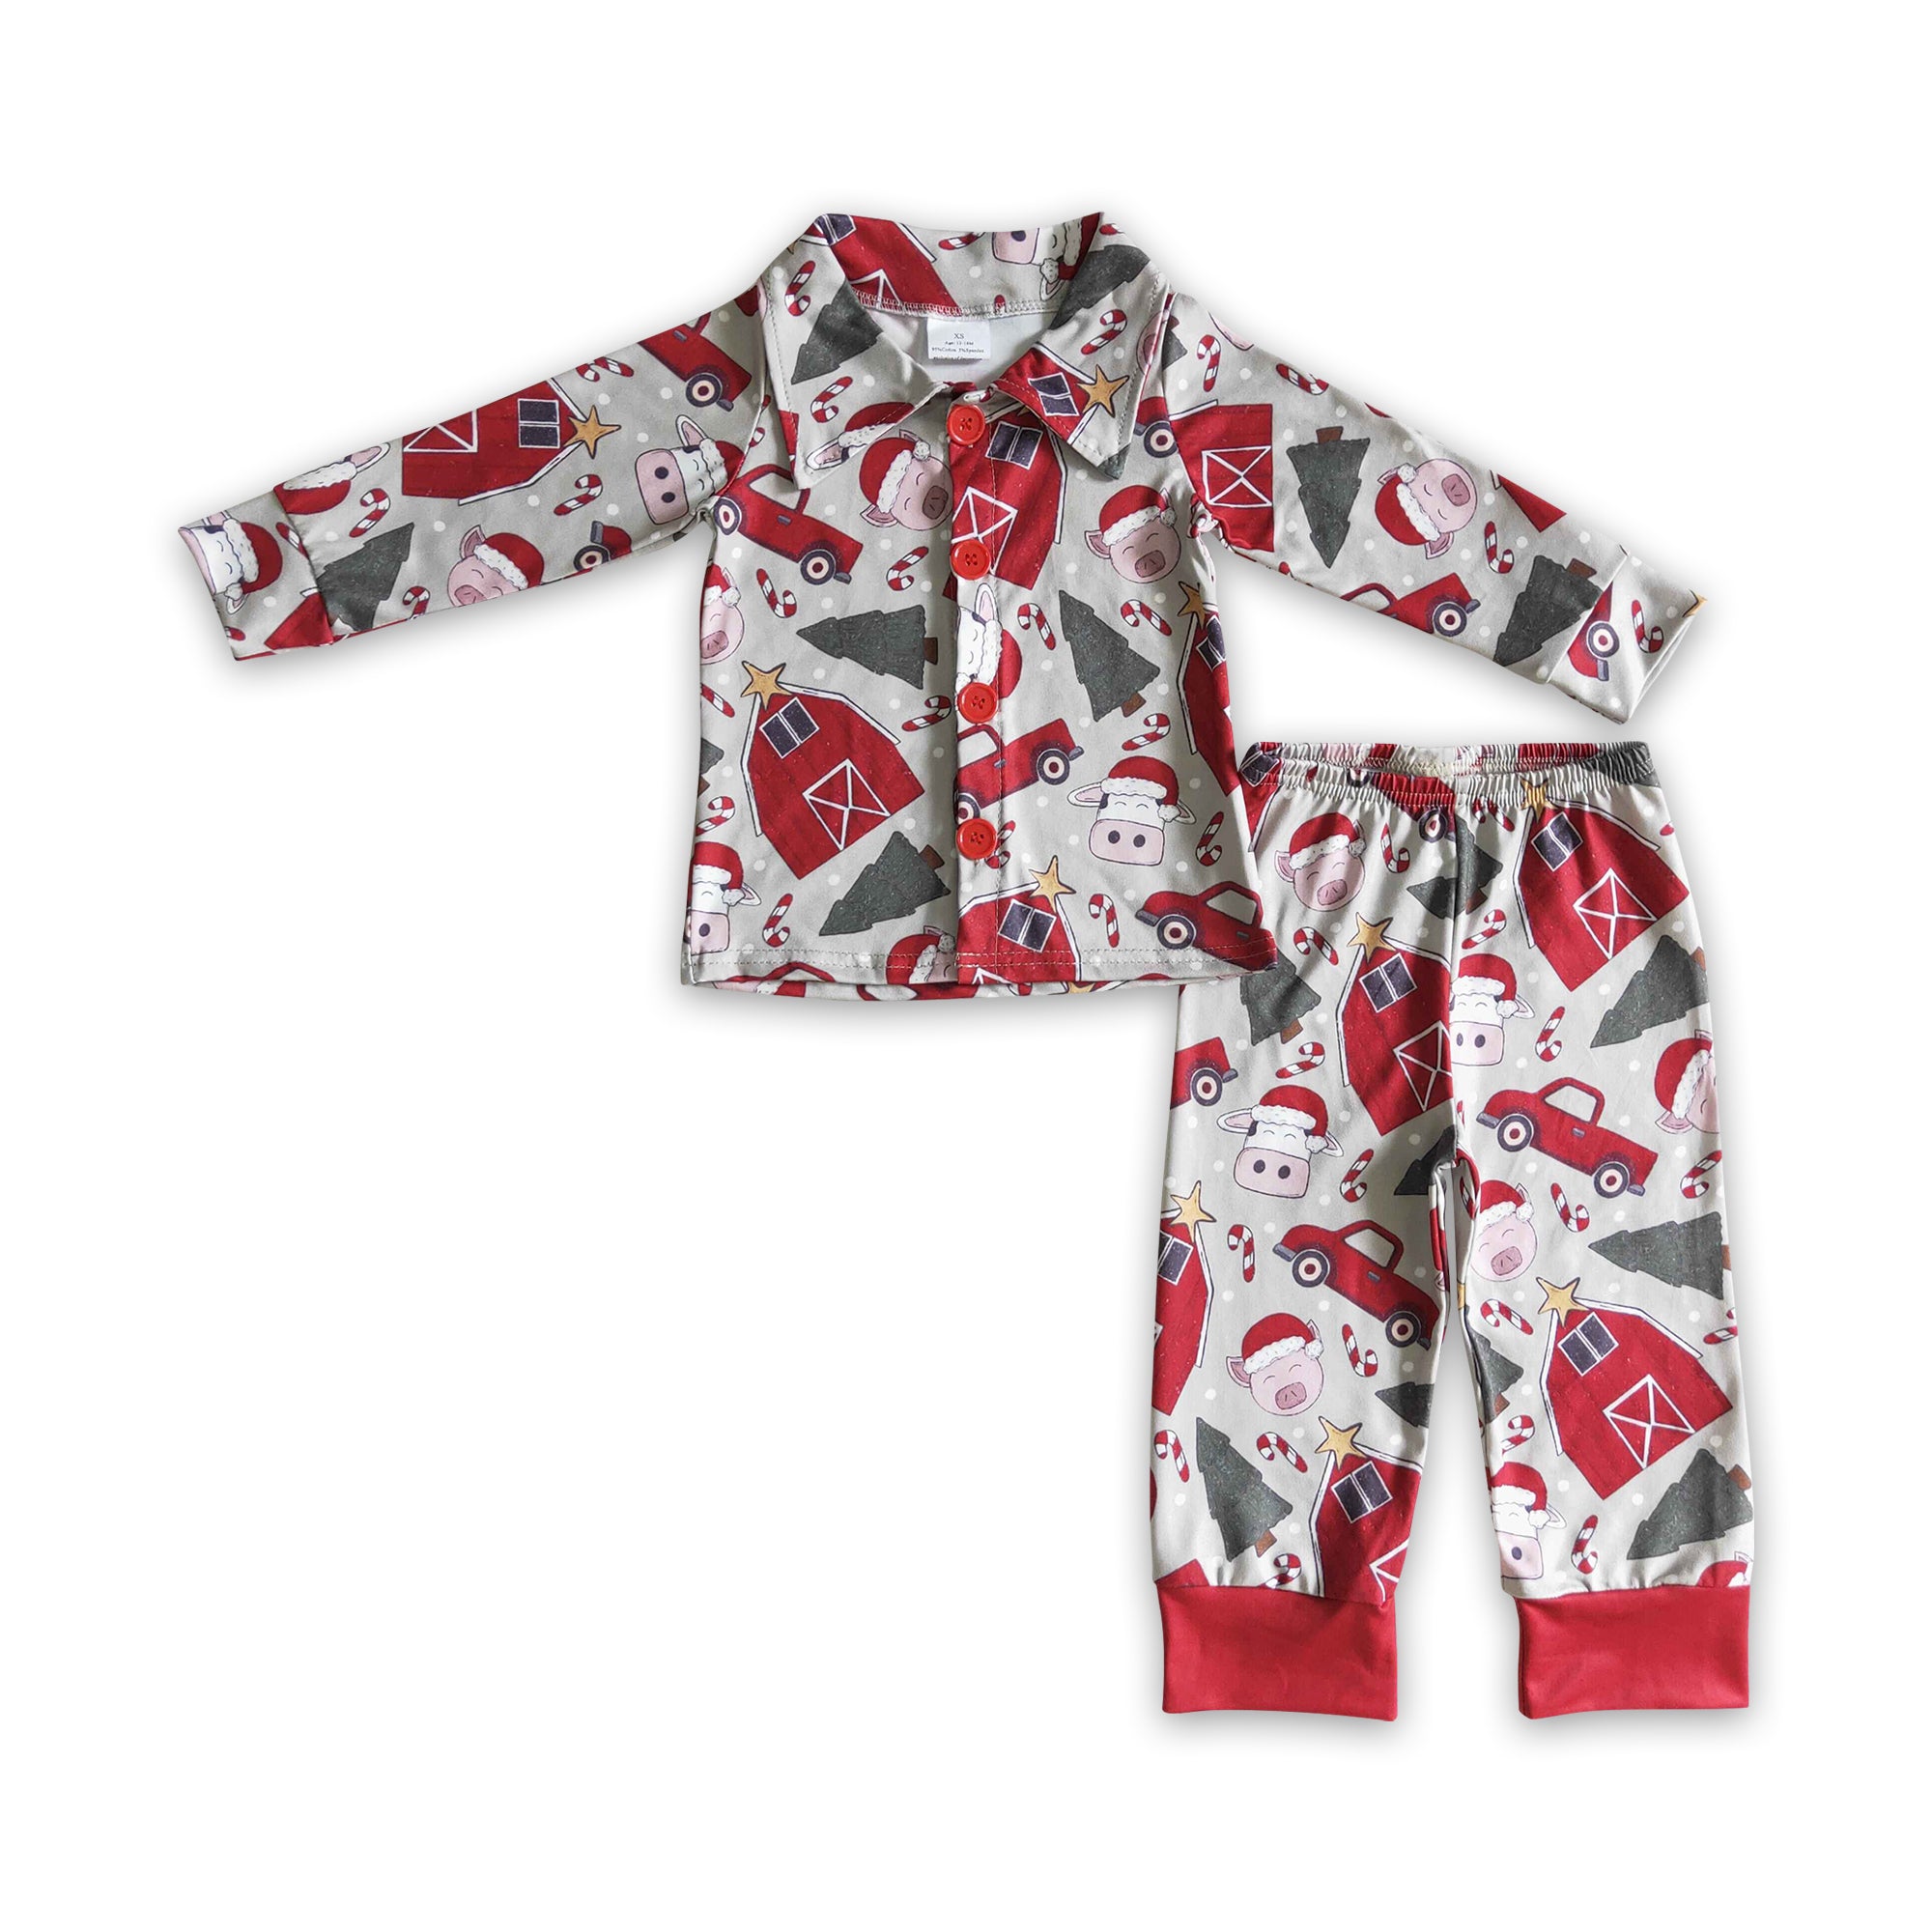 BLP0143 boy sleapwear farm red winter pajamas set